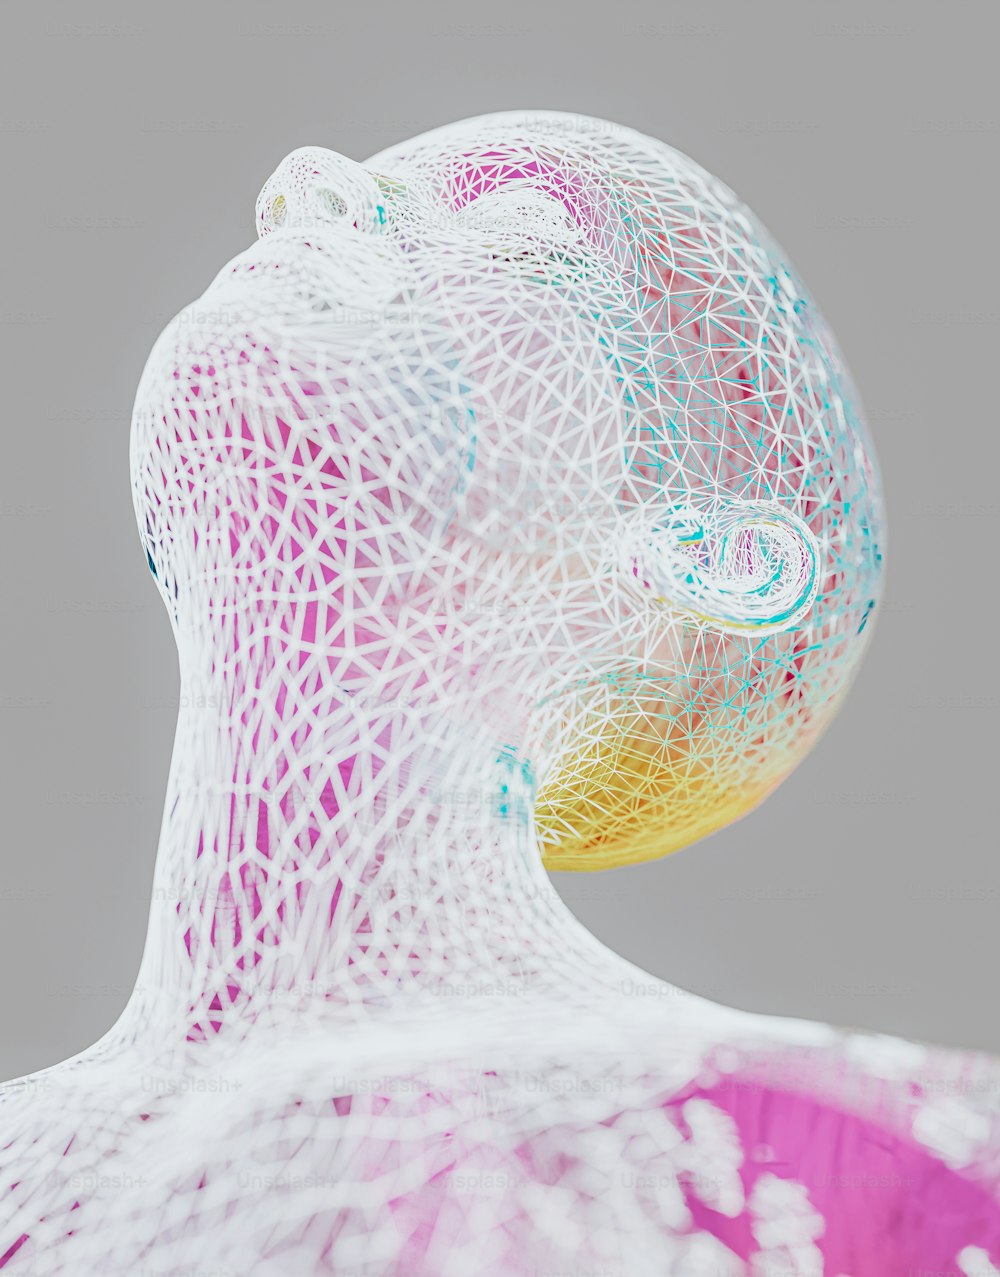 Una scultura di una testa di donna fatta di rete